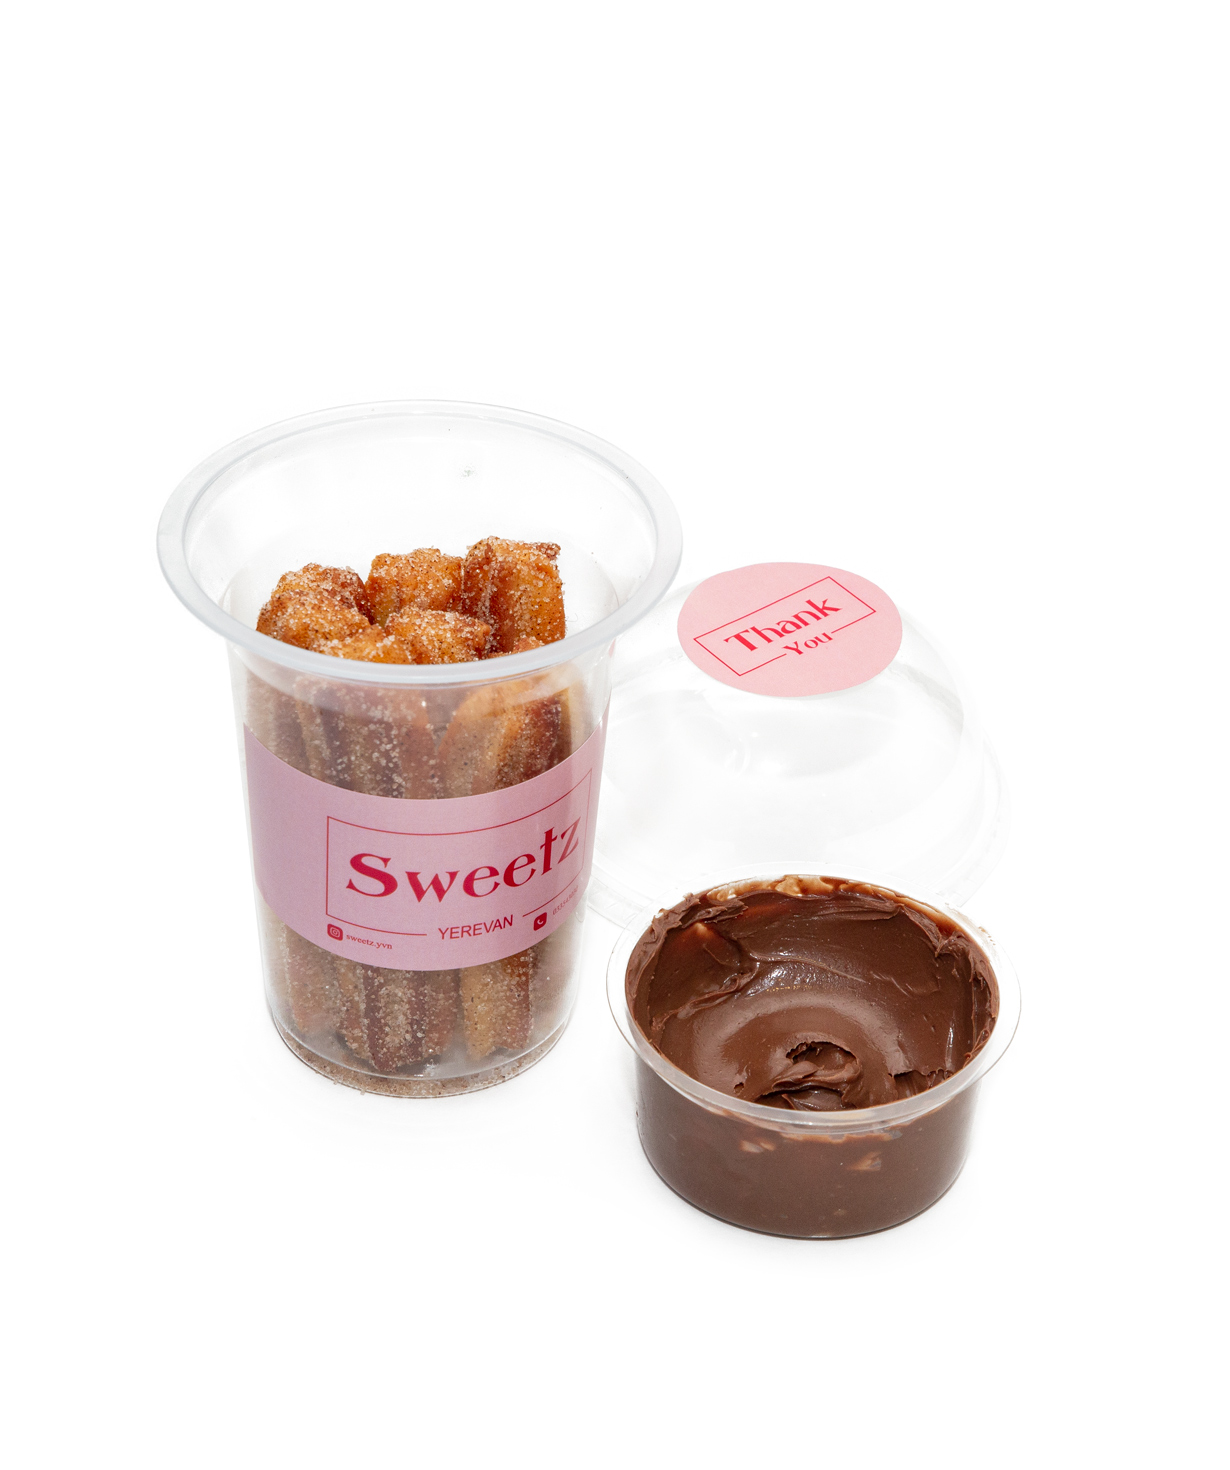 Հավաքածու «Sweetz» քաղցր բուրգեր և չուռոս